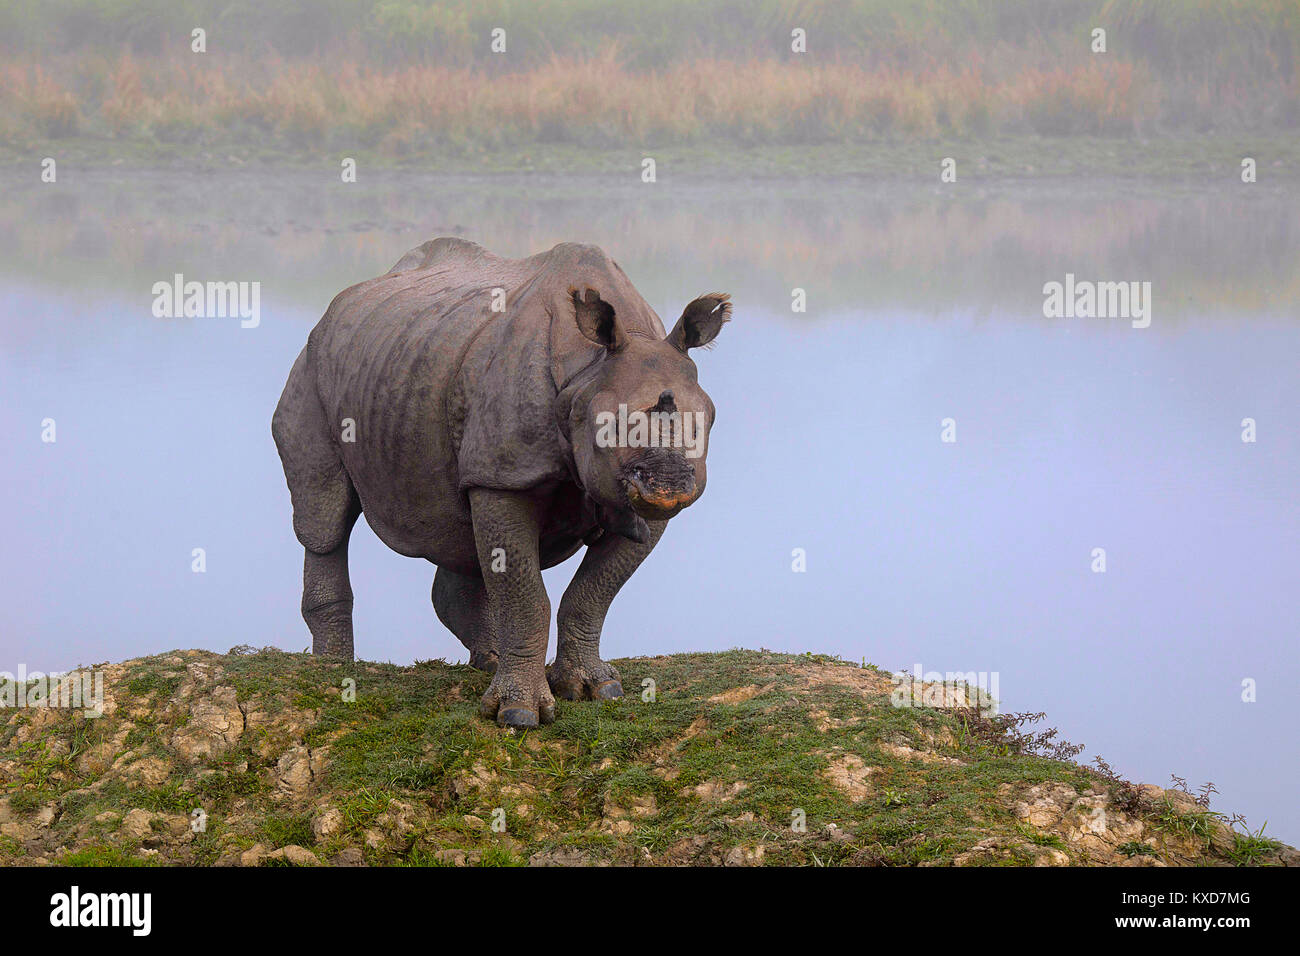 Un rhinocéros unicornes indiens, Rhinoceros unicornis, la Réserve de tigres de Kaziranga, Assam, Inde Banque D'Images